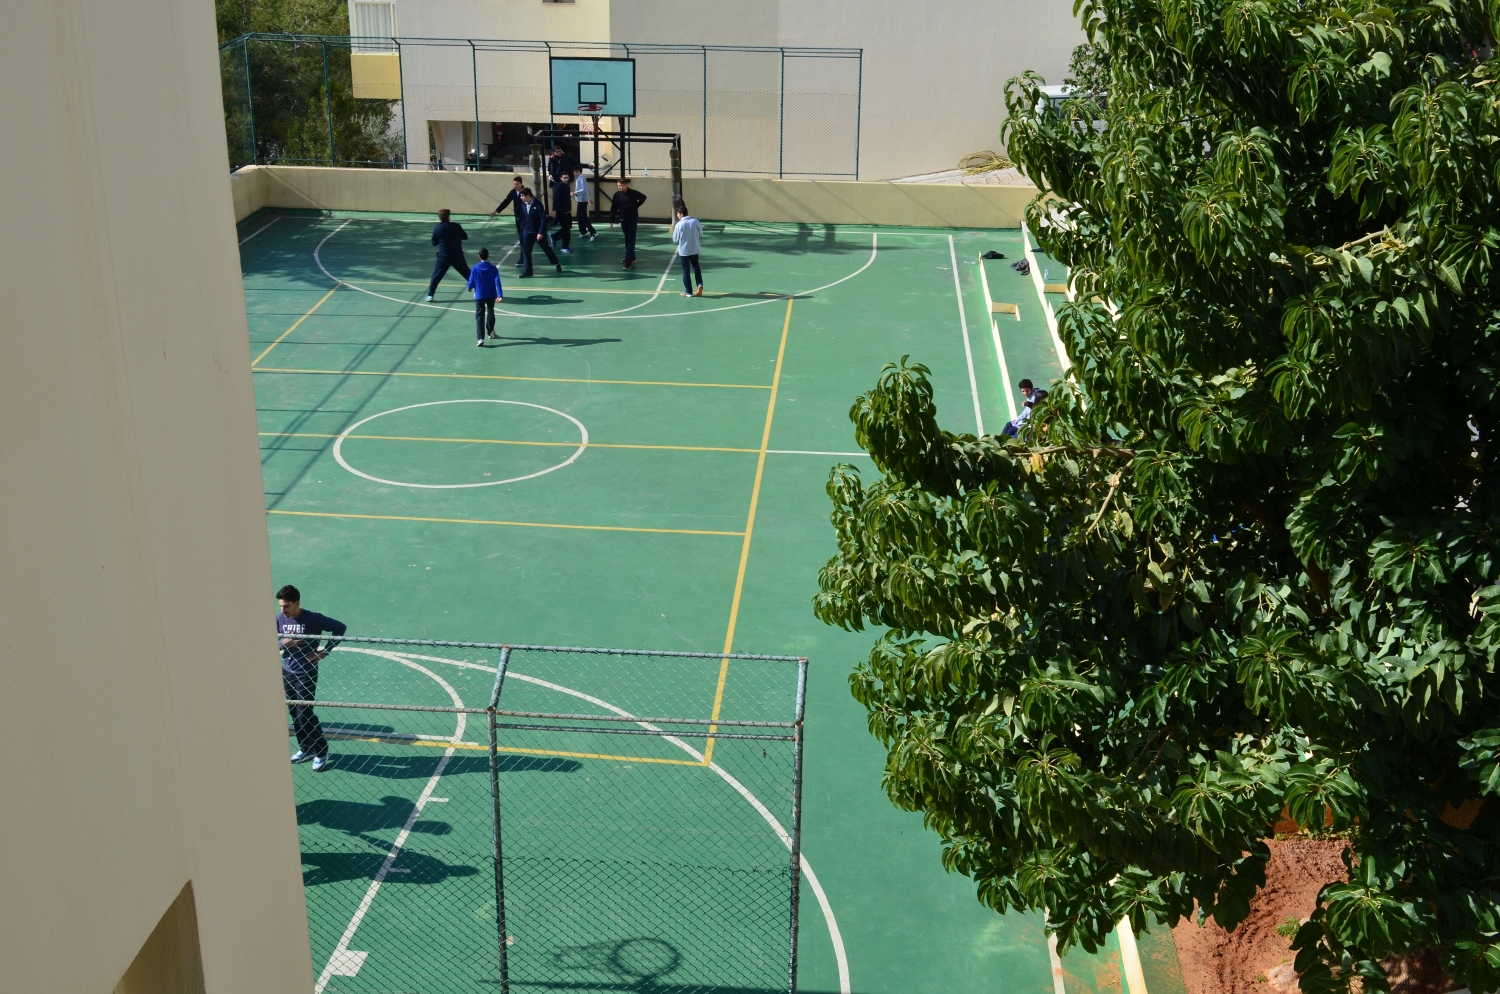 Terrain extérieur de basket et de football, entre le bâtiment du lycée et celui du collège © Racha KASSIR